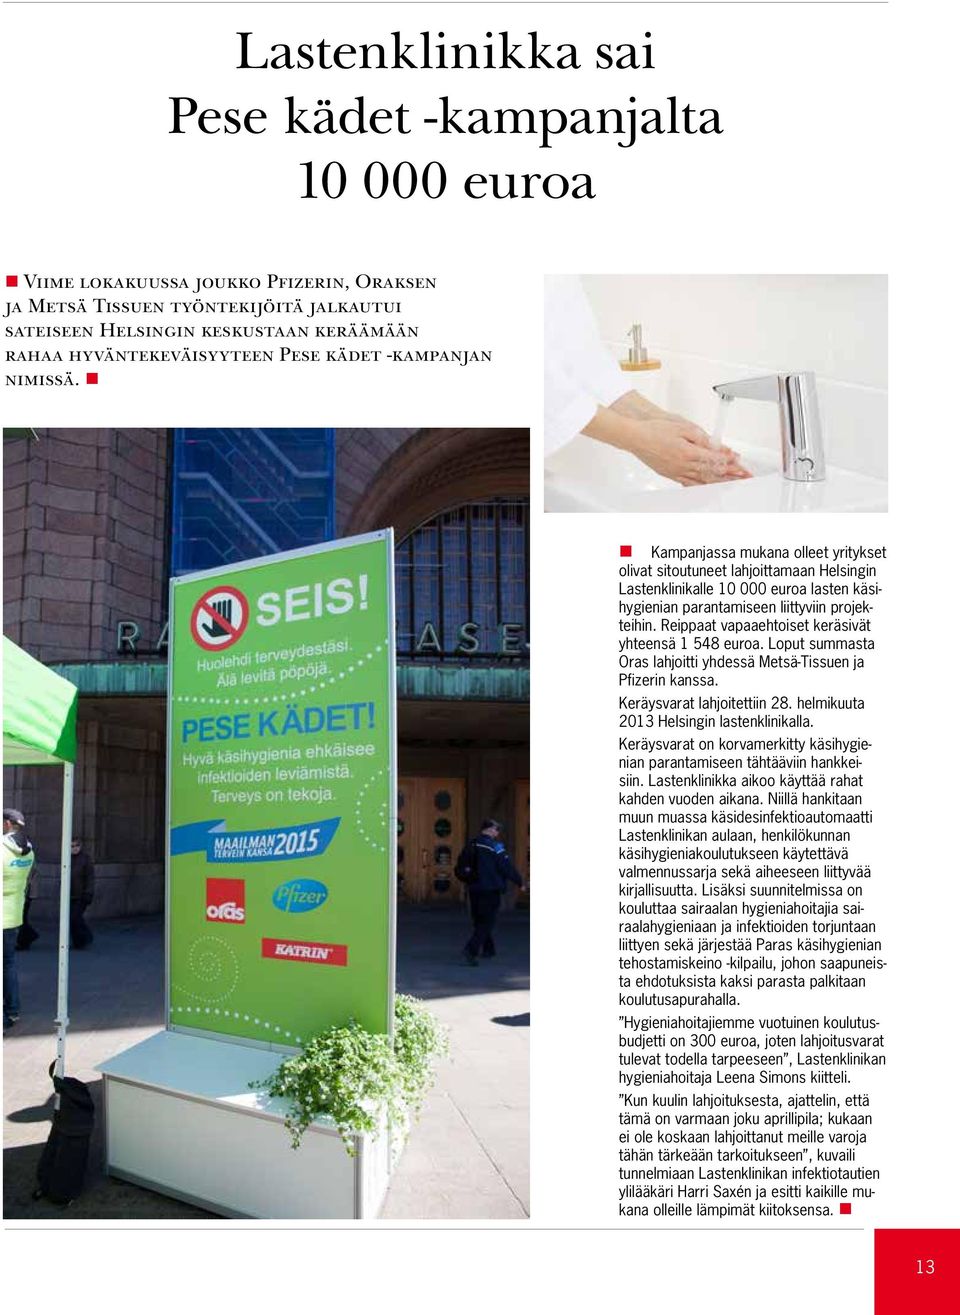 Kampanjassa mukana olleet yritykset olivat sitoutuneet lahjoittamaan Helsingin Lastenklinikalle 10 000 euroa lasten käsihygienian parantamiseen liittyviin projekteihin.